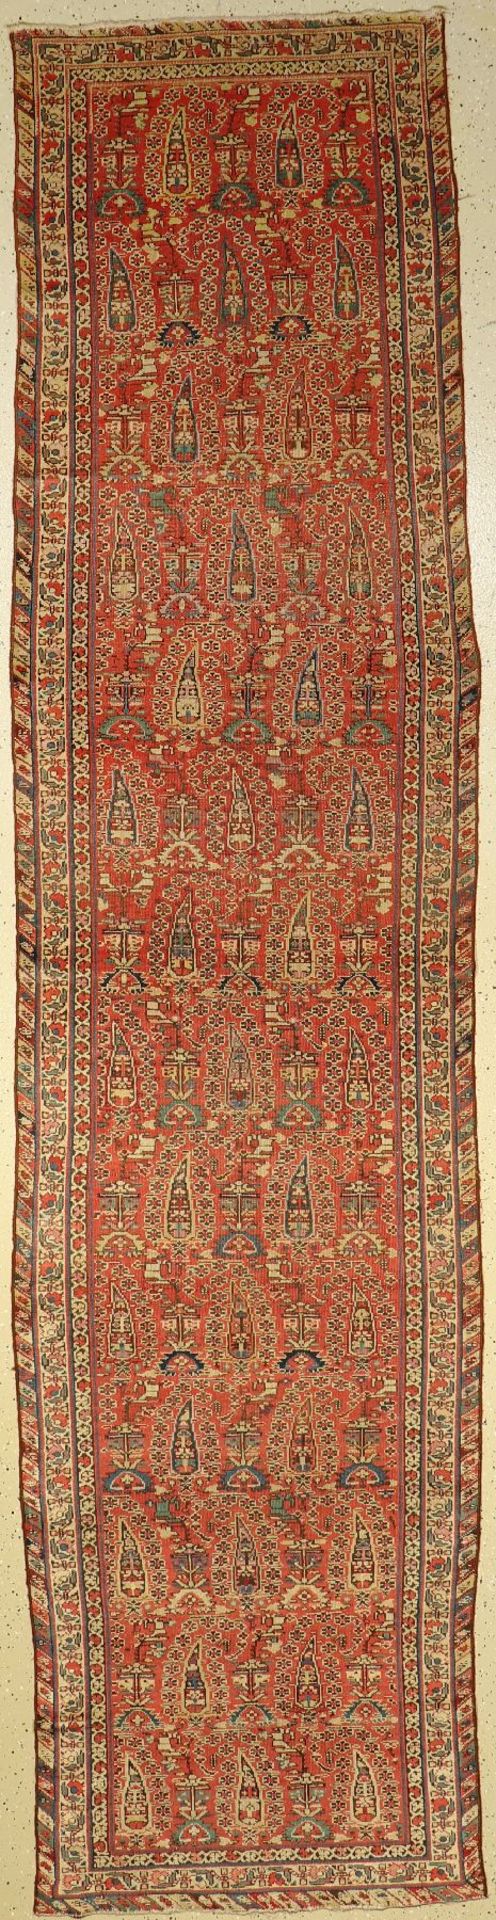 Kurdische "Galerie" antik, Baum-Muster, Persien, um 1890, Wolle auf Baumwolle, ca. 371x 90 cm, feine